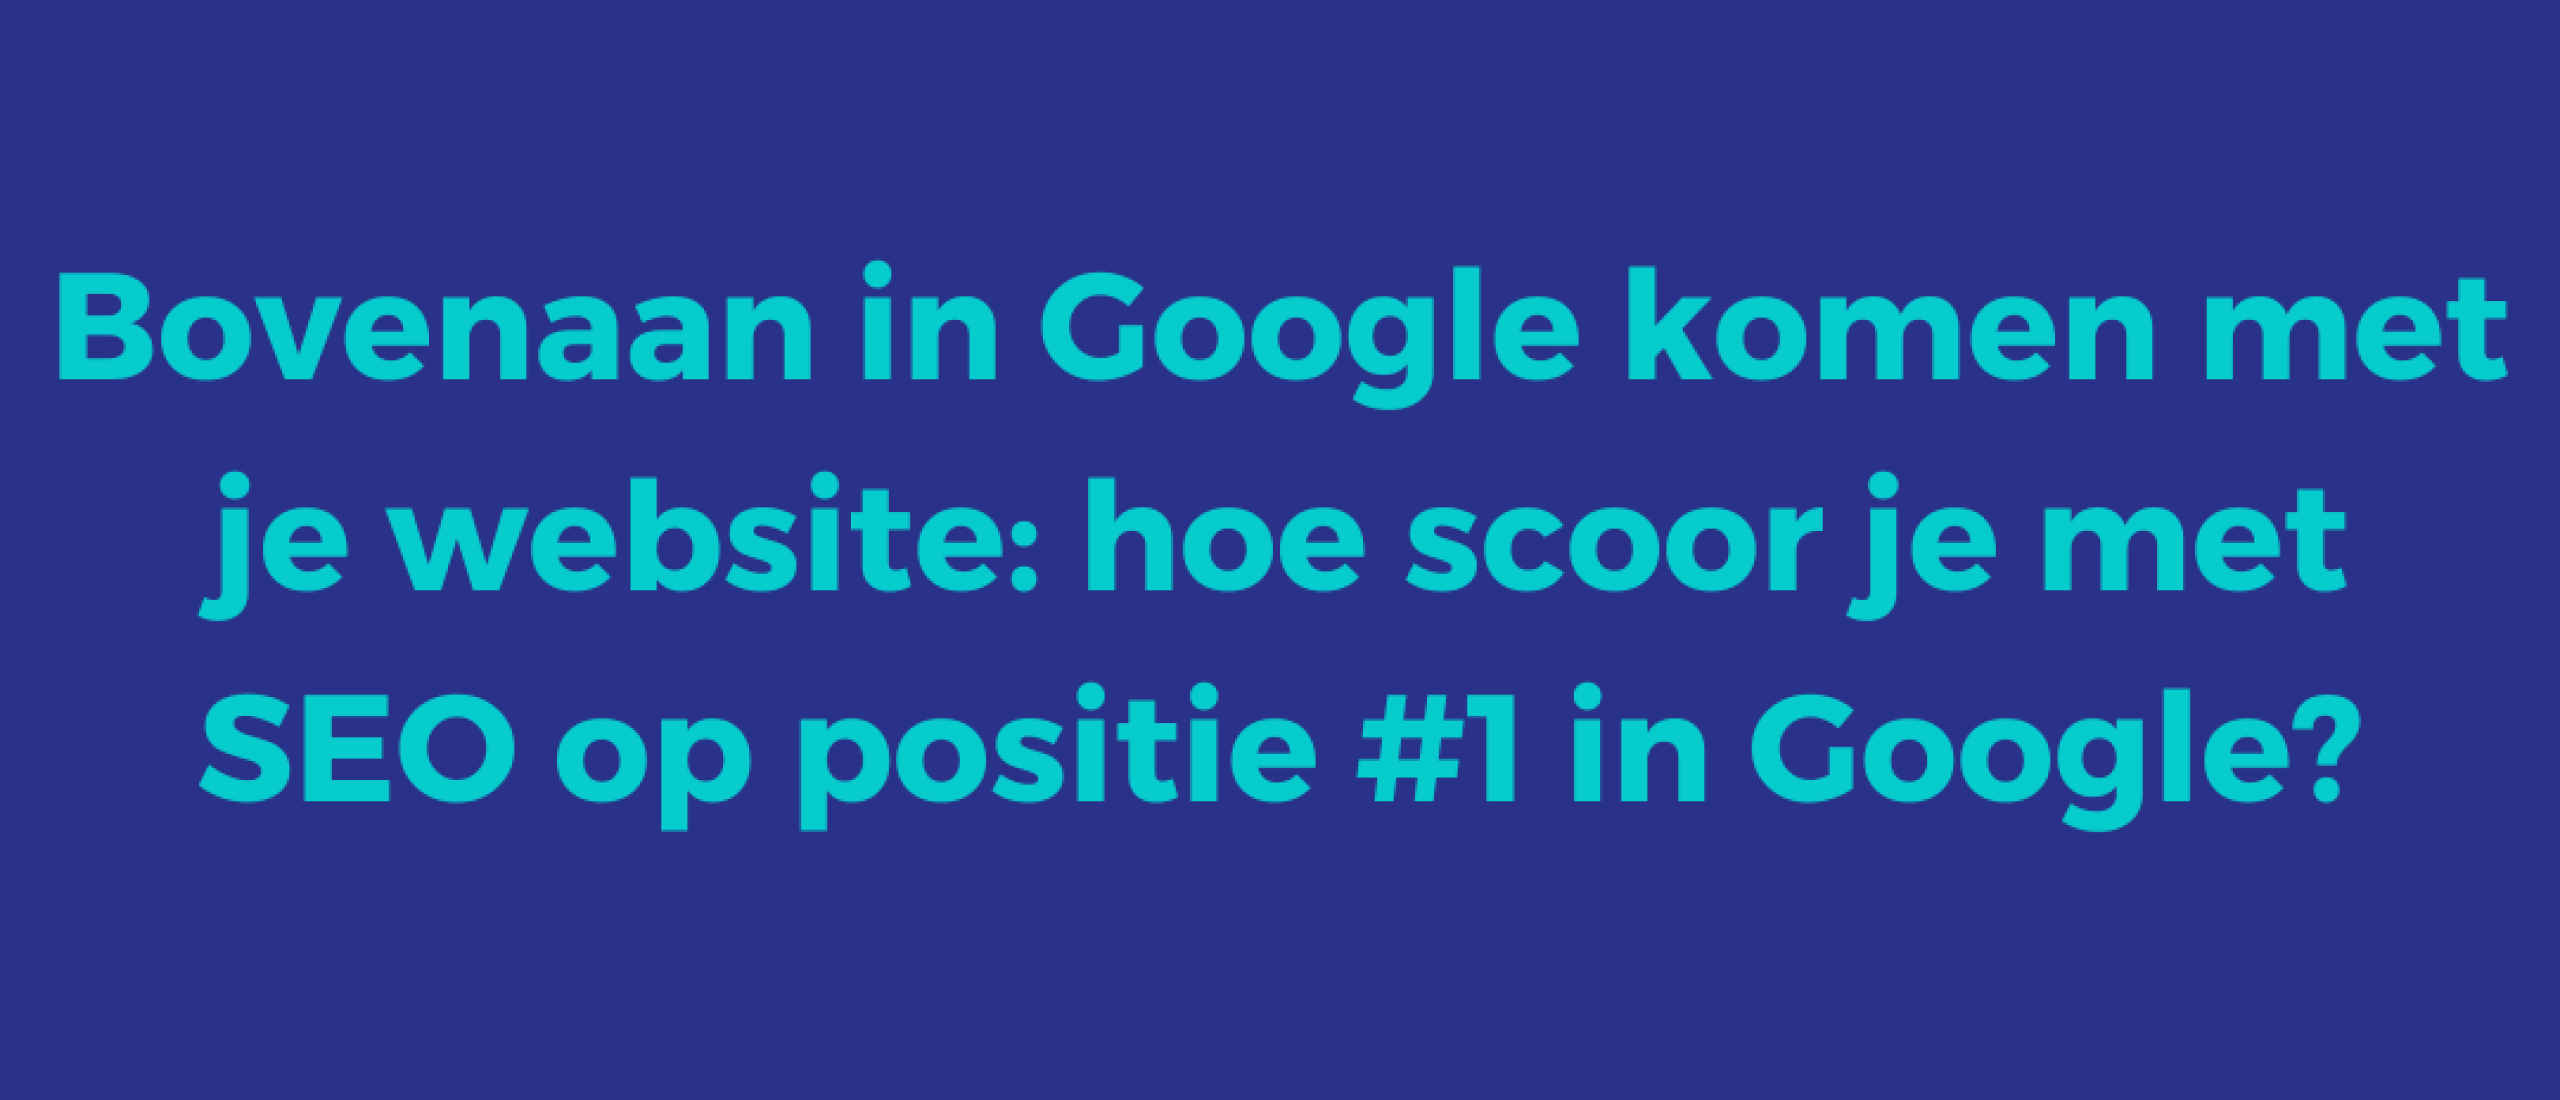 Bovenaan in Google komen met je website: hoe scoor je met SEO op positie #1 in Google?